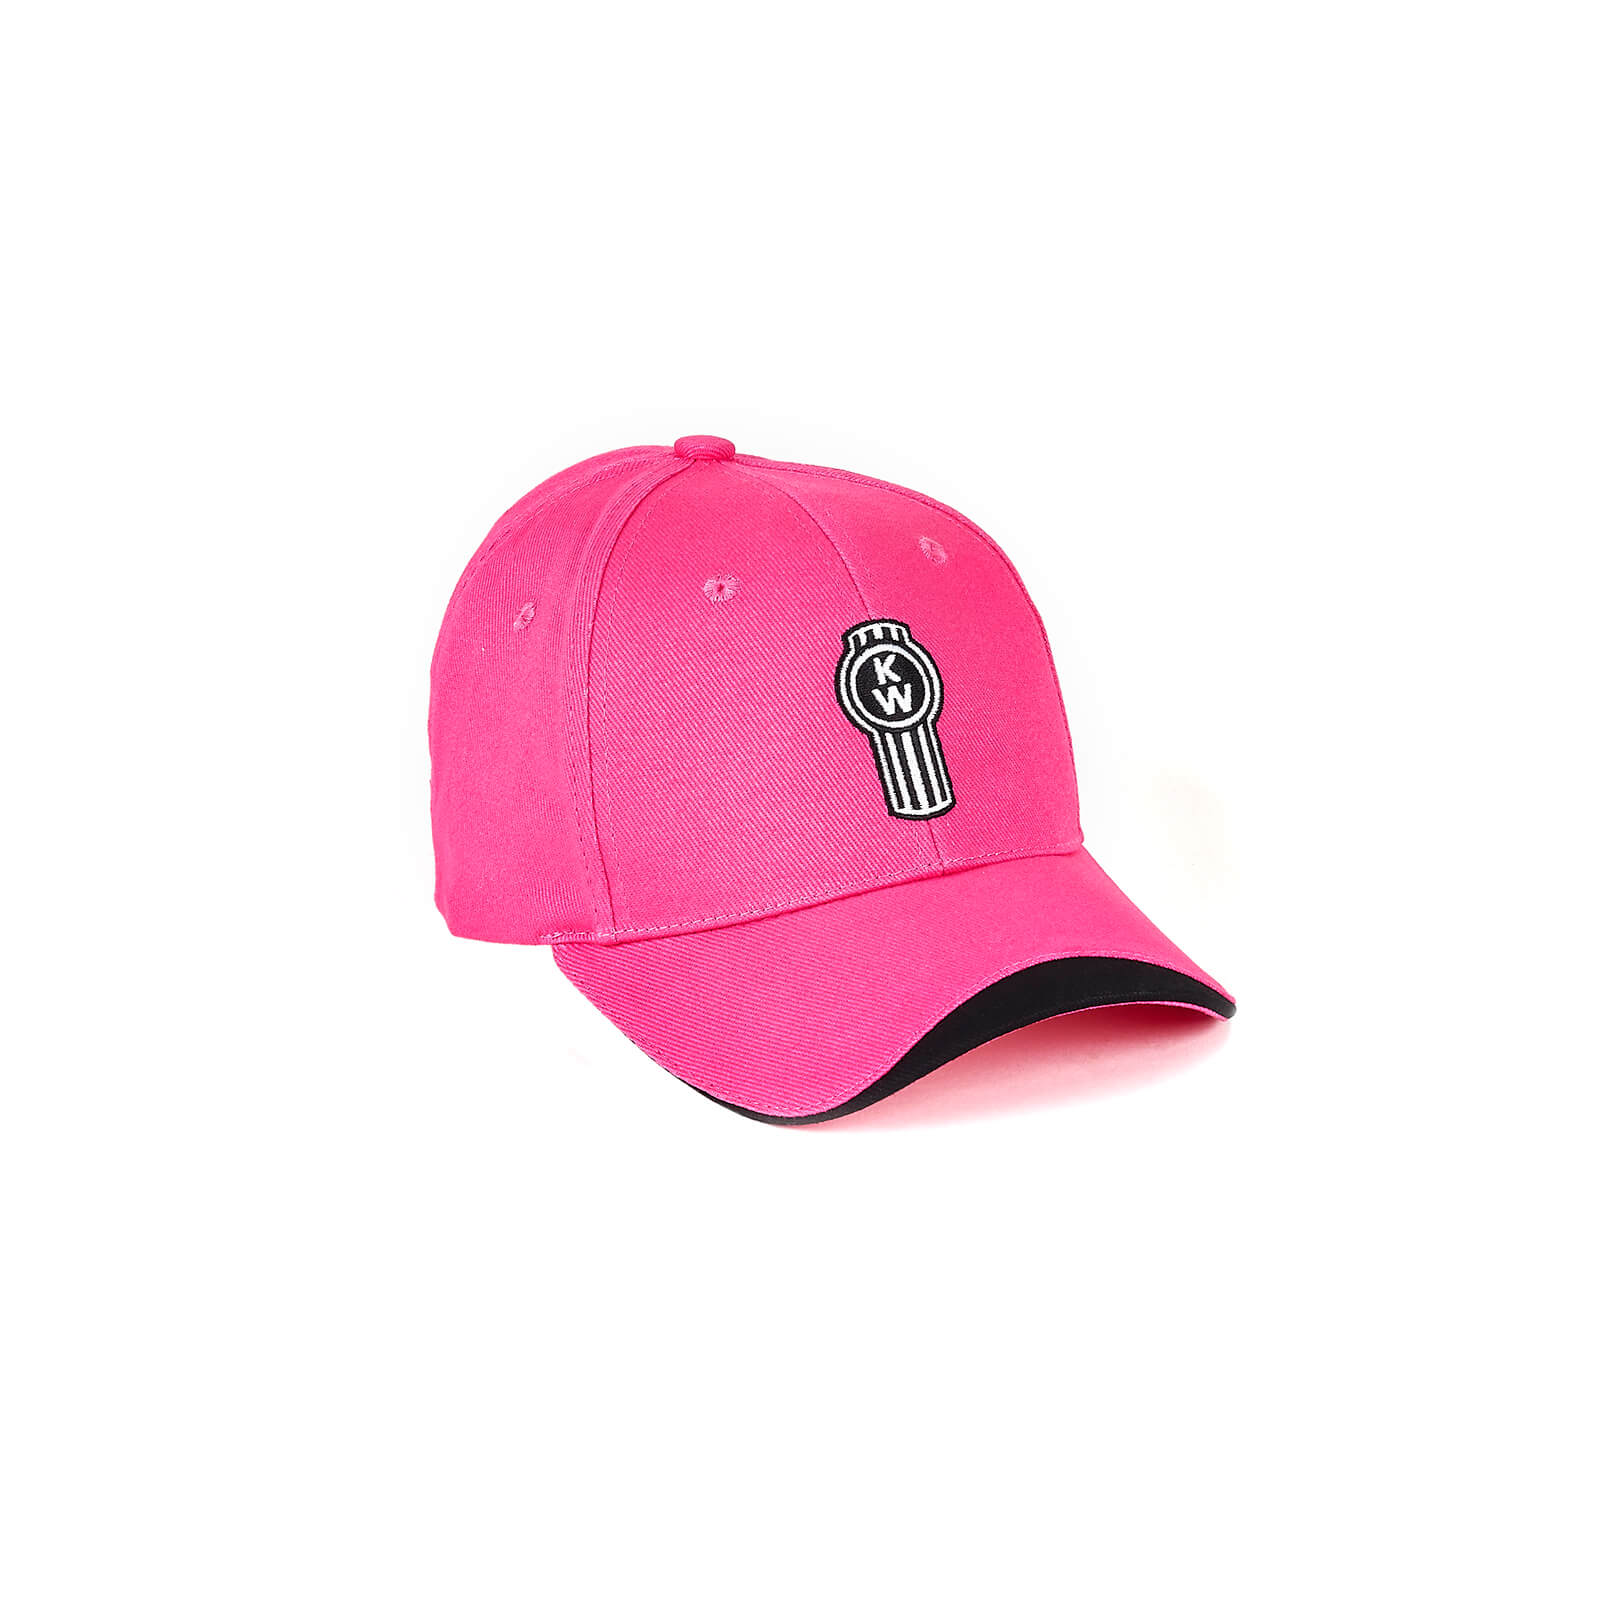 Pink cap - women